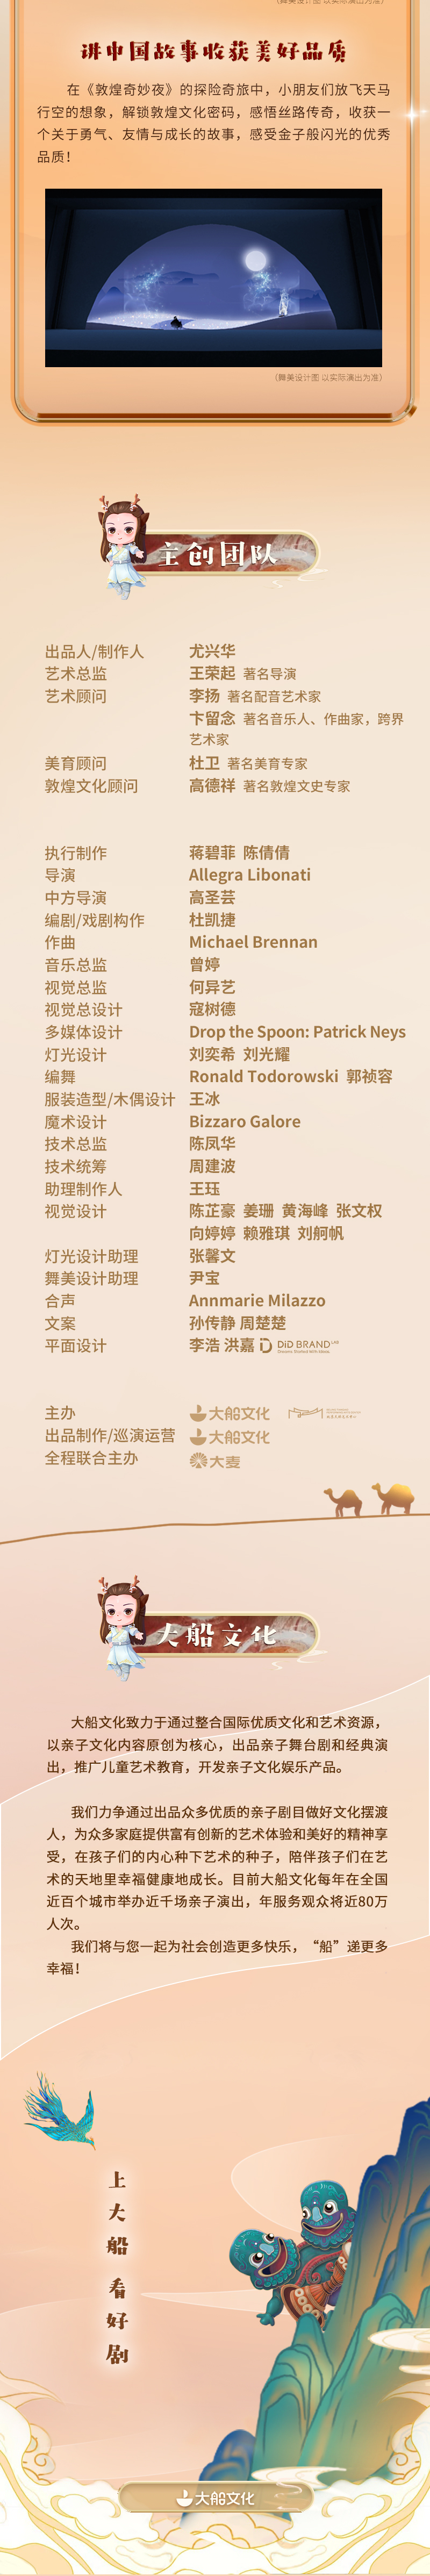 【北京】大船文化·亲子音乐舞台剧《敦煌奇妙夜》